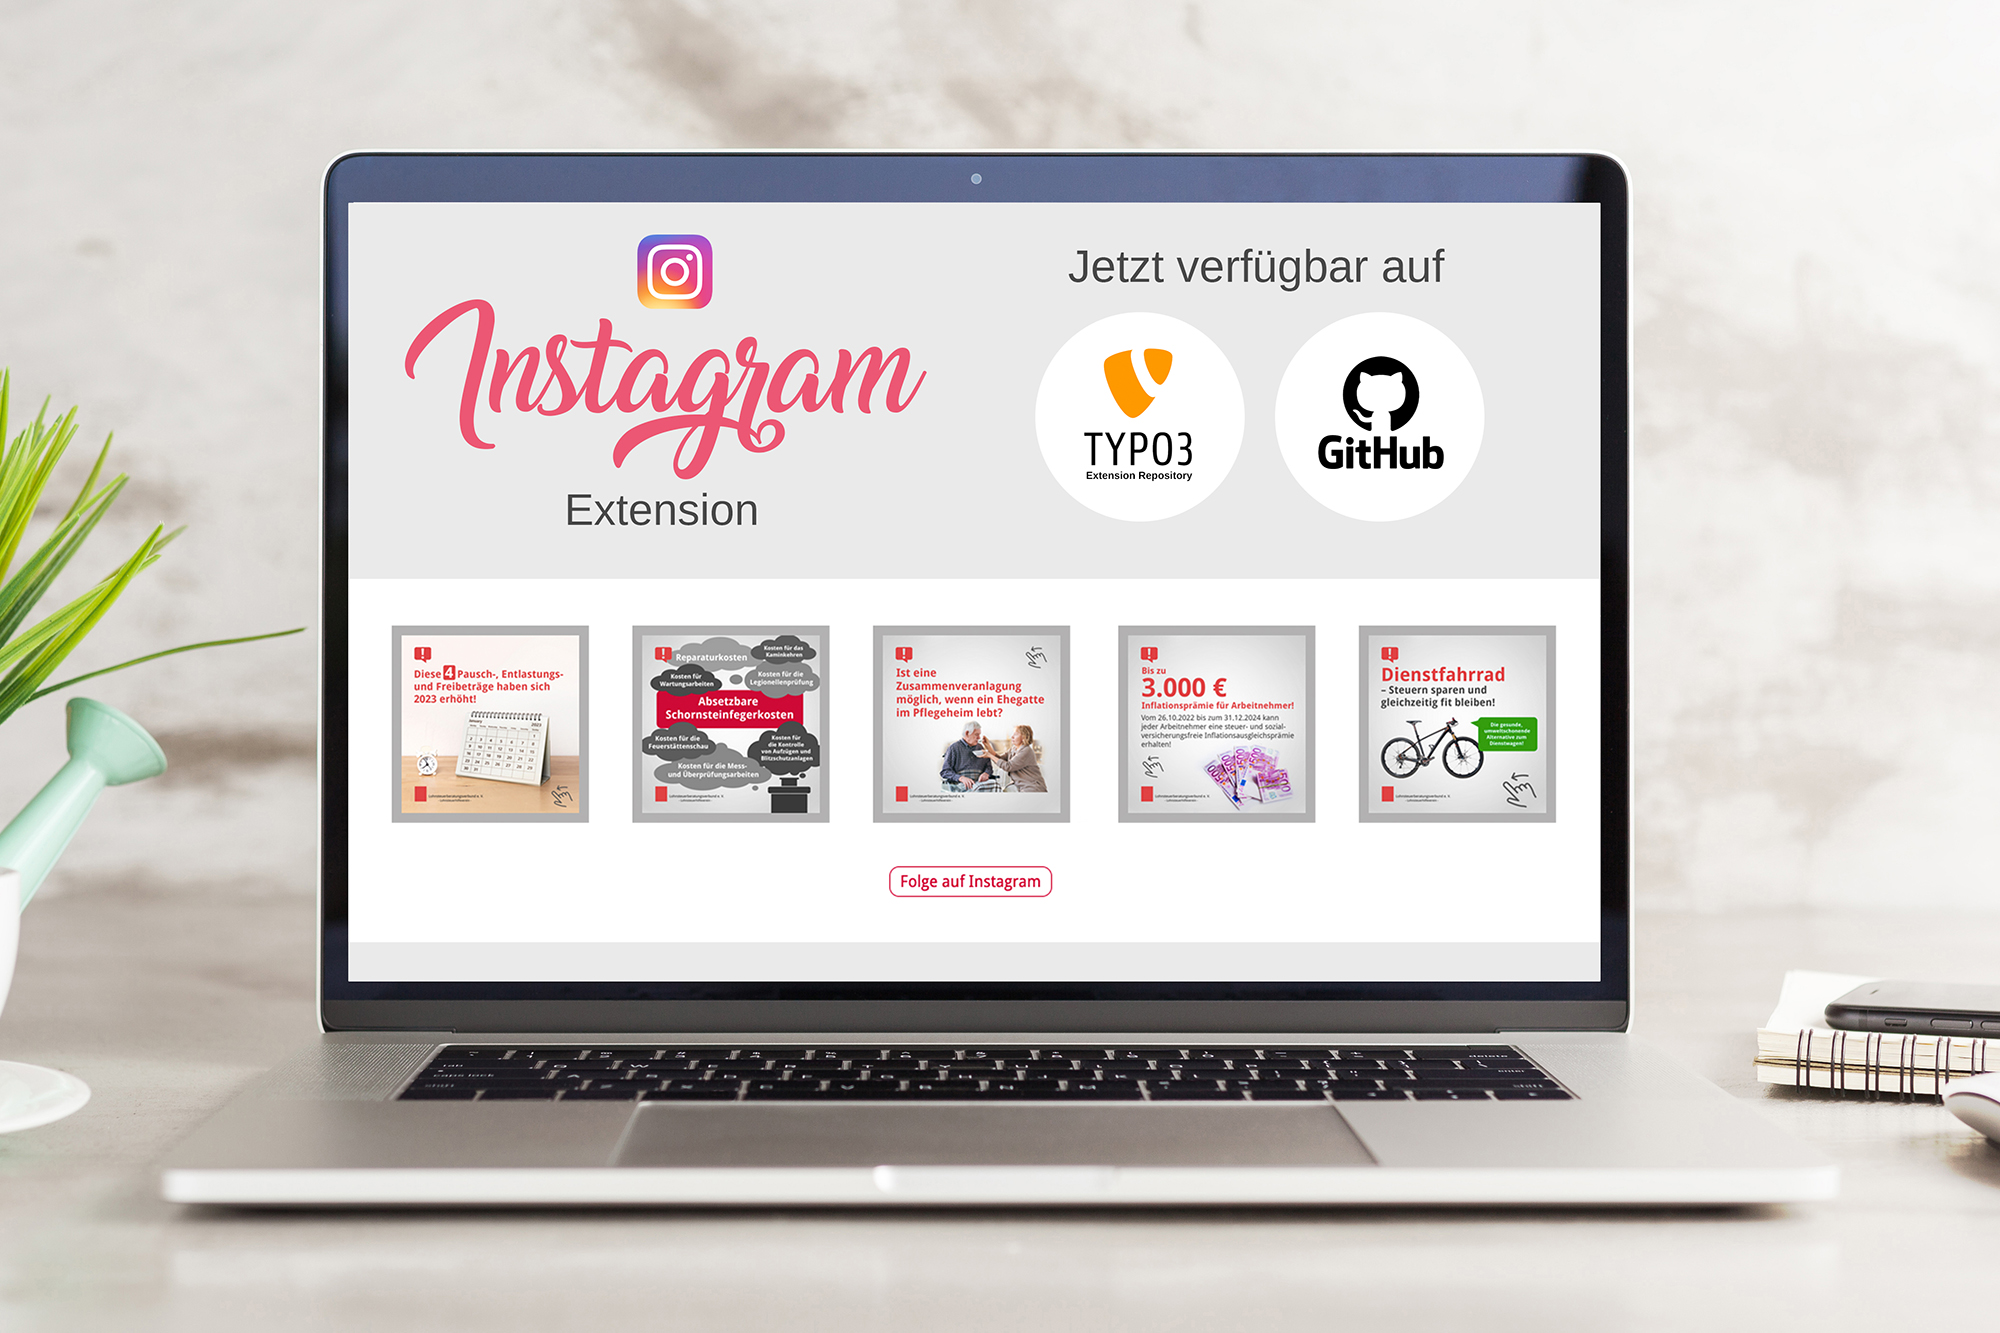 Instagram Extension verfügbar auf Typo3 und GitHub